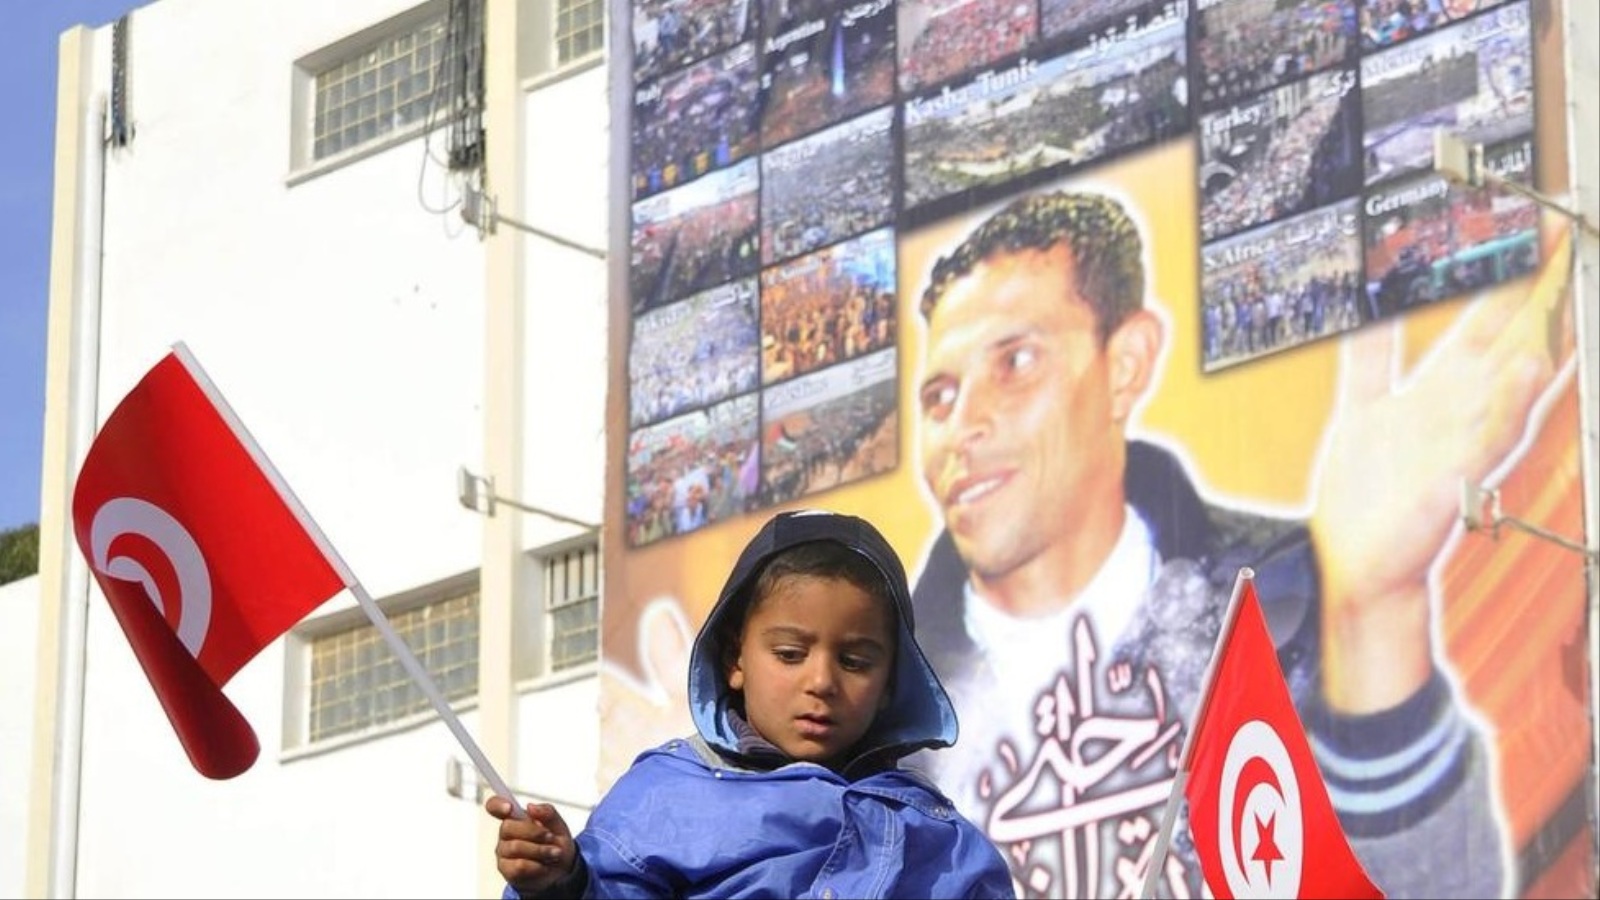 ‪طفل تونسي يحمل علم بلاده ووراءه صورة كبيرة لمحمد البوعزيزي‬ طفل تونسي يحمل علم بلاده ووراءه صورة كبيرة لمحمد البوعزيزي (الأوروبية- أرشيف)